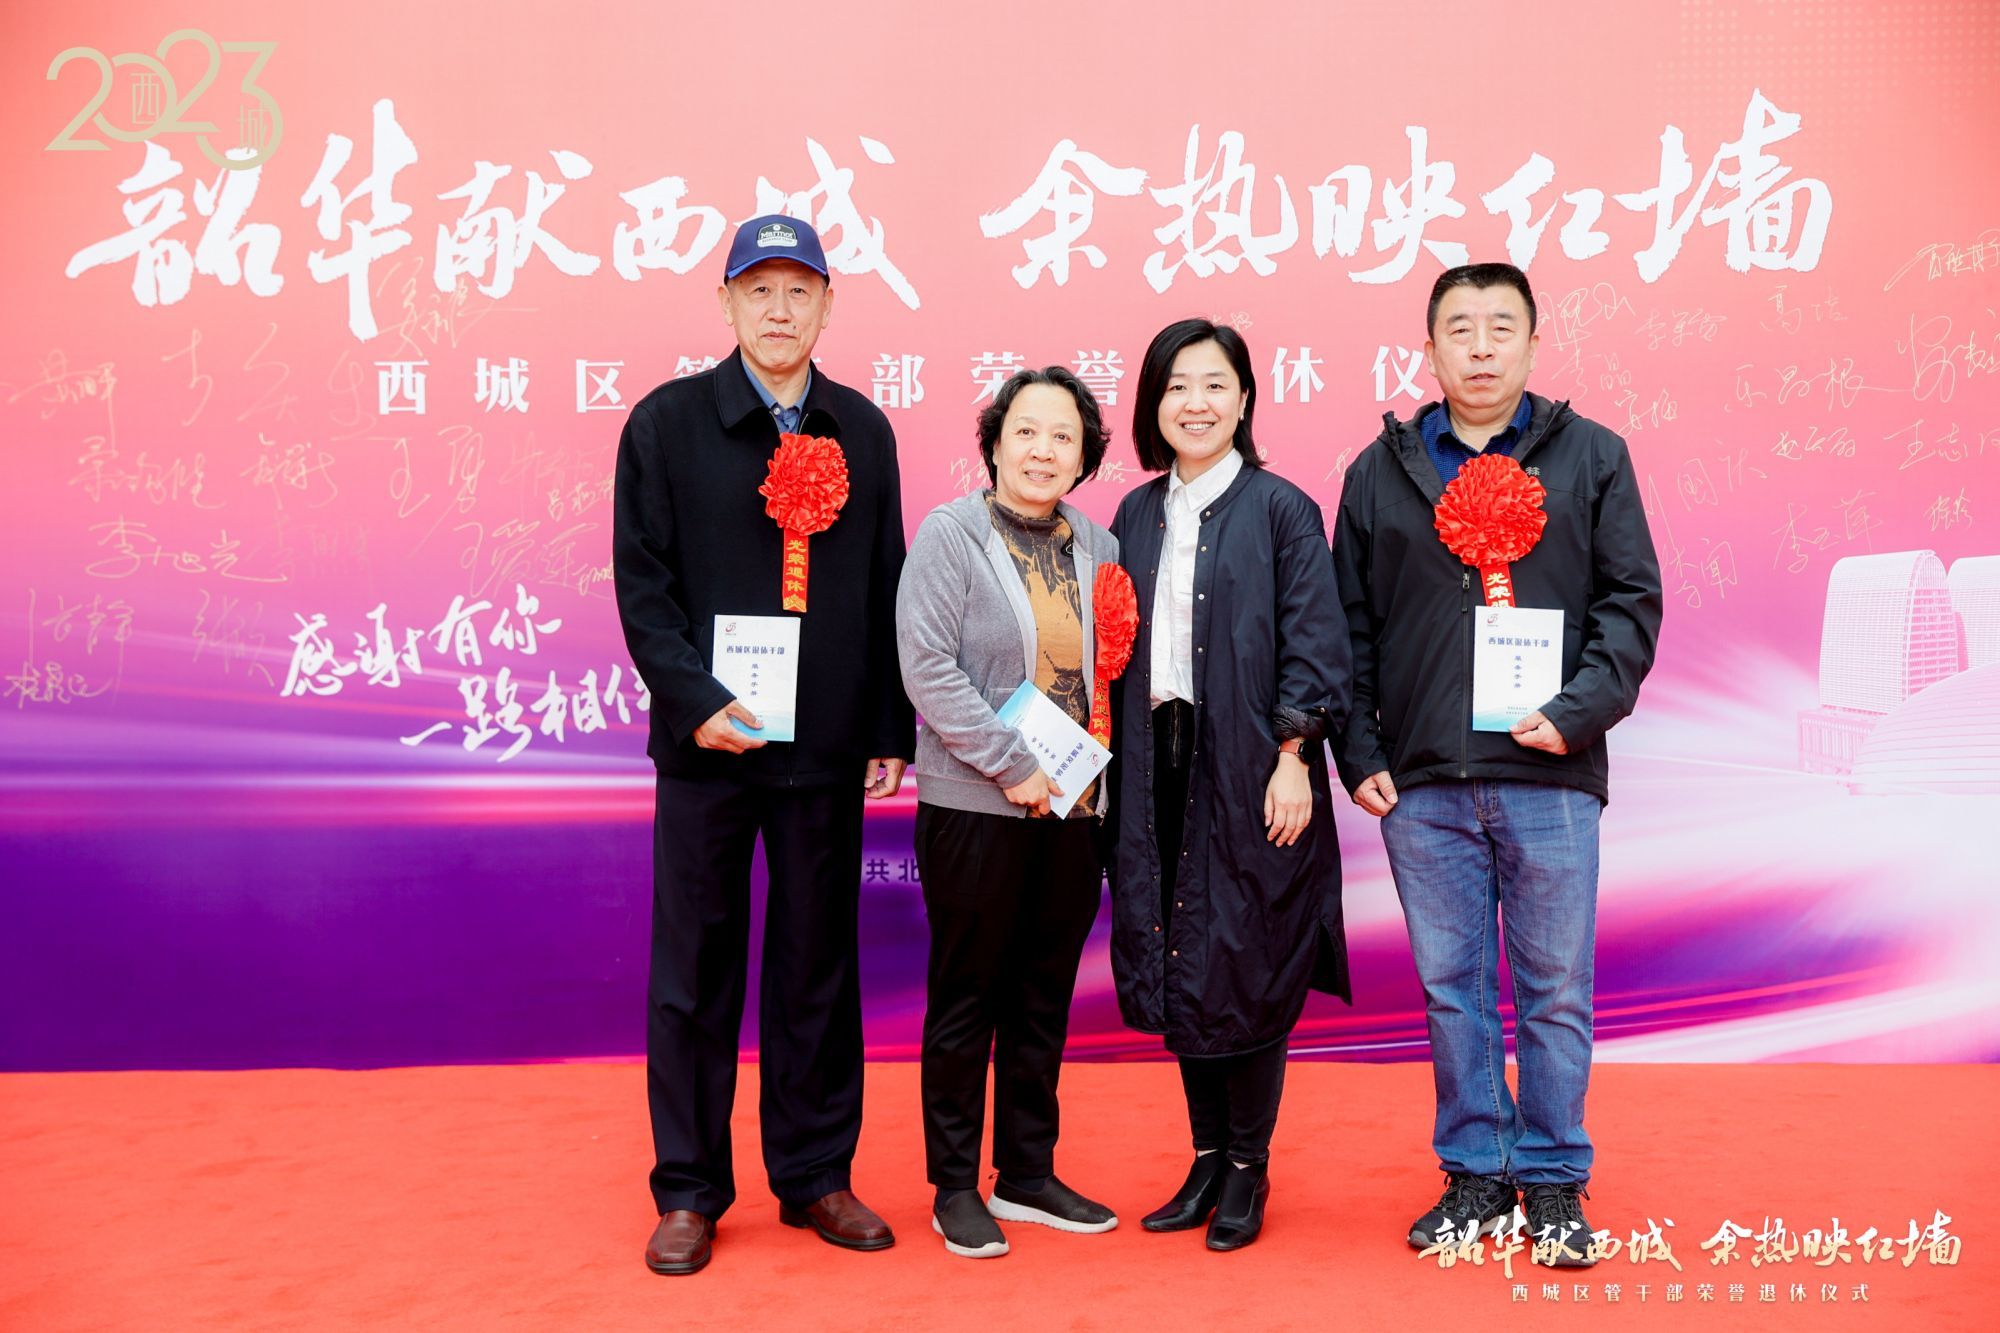 北京西城为125名区管干部举办荣誉退休仪式